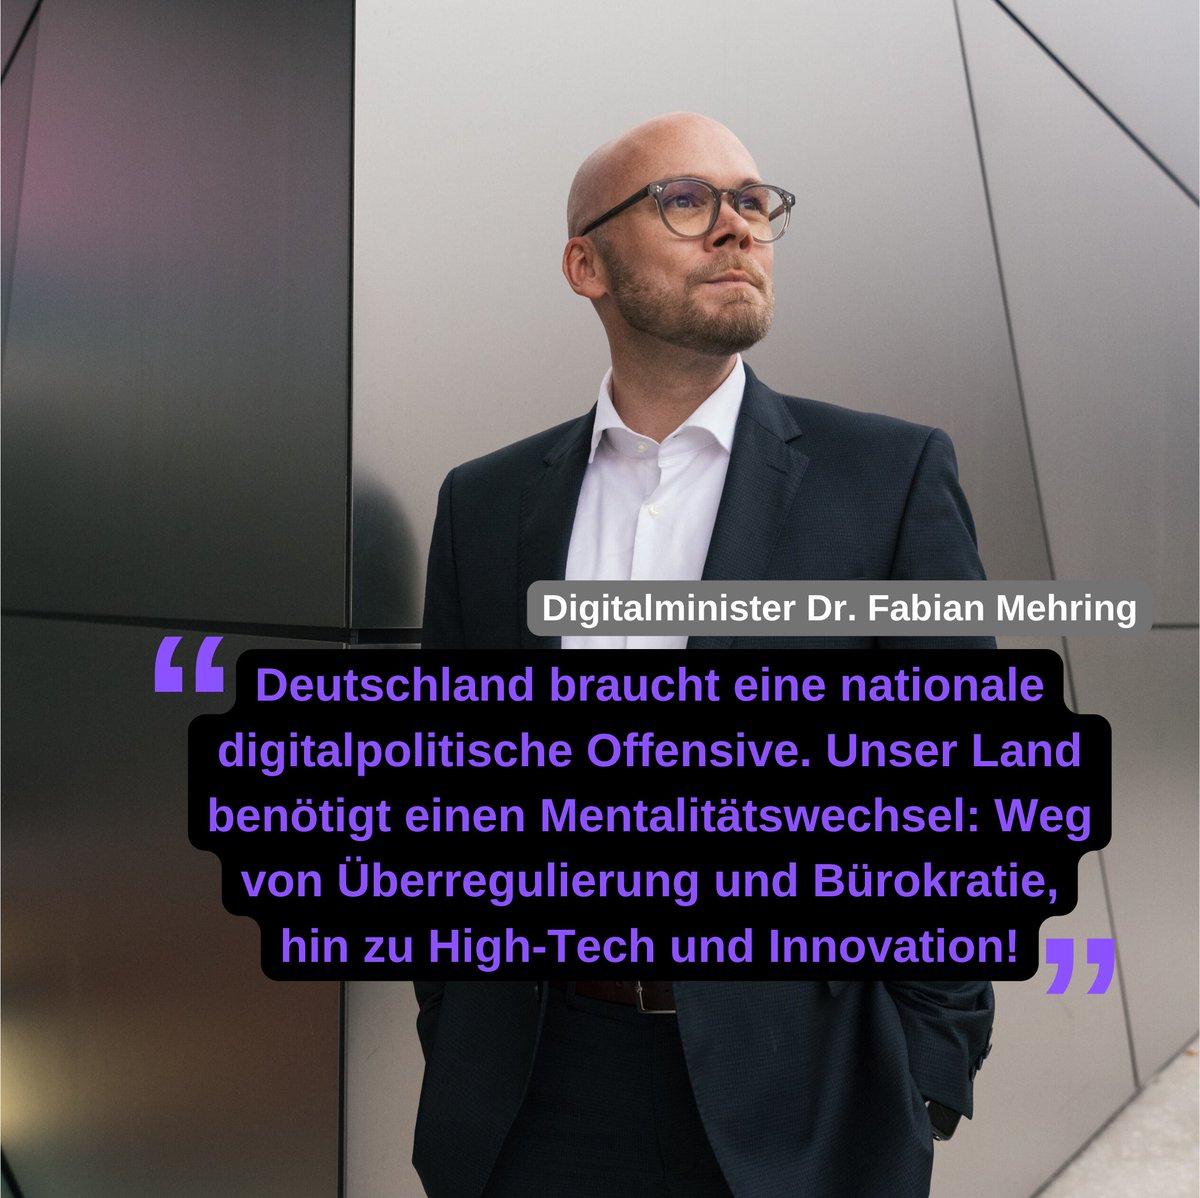 Bayerns Digitalminister @FabianMehring erklärt zur neuesten Auswertung des #Monitor #Digitalpolitik der @Bitkom:
„Diese Bitkom-Studie ist ein vernichtendes Zeugnis für die #Digitalpolitik der #Bundesregierung. Was wir jetzt dringend brauchen, um das Ruder beherzt herumzureißen,